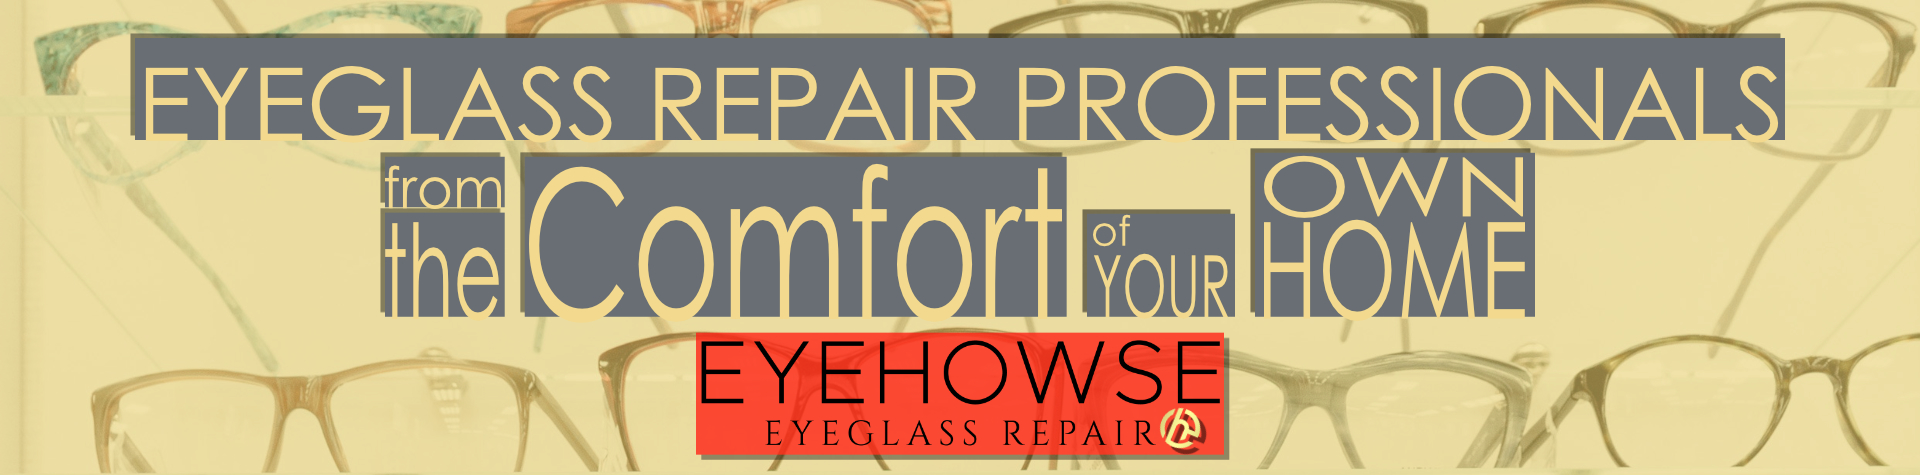 Eyeglass Repair Professionals